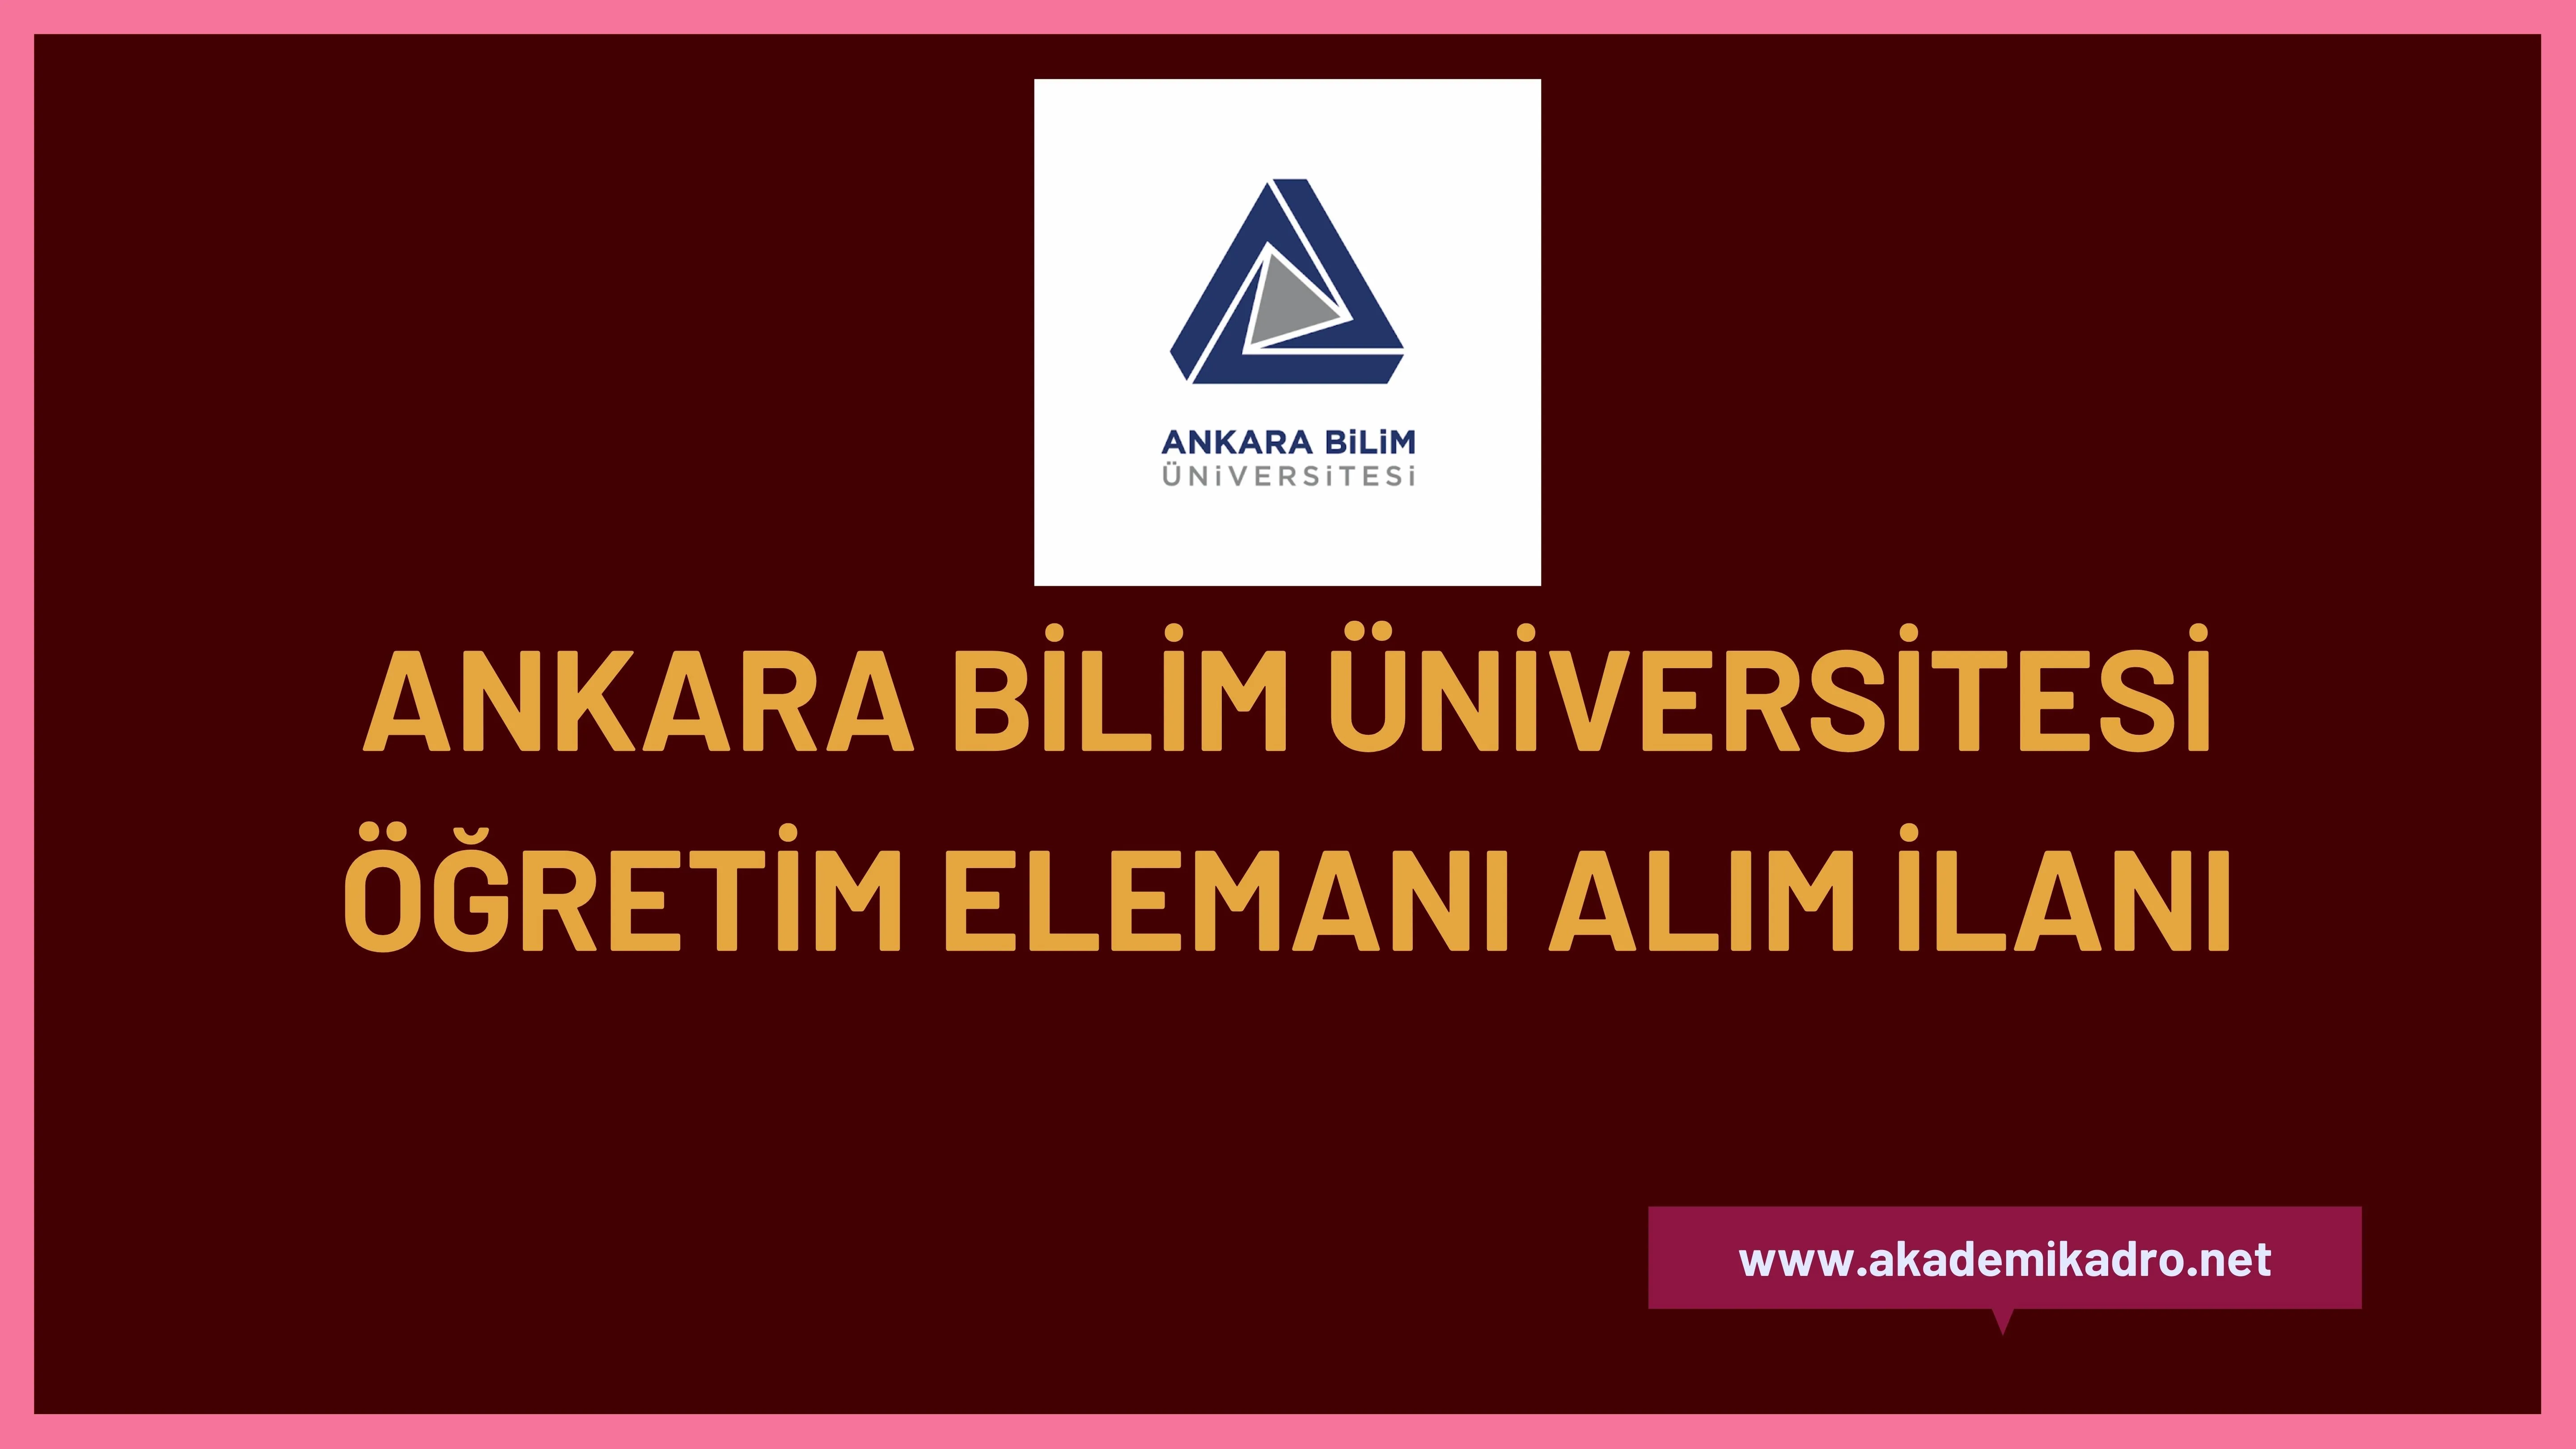 Ankara Bilim Üniversitesi 6 Araştırma görevlisi, 24 Öğretim görevlisi ve 18 Öğretim üyesi alacak.